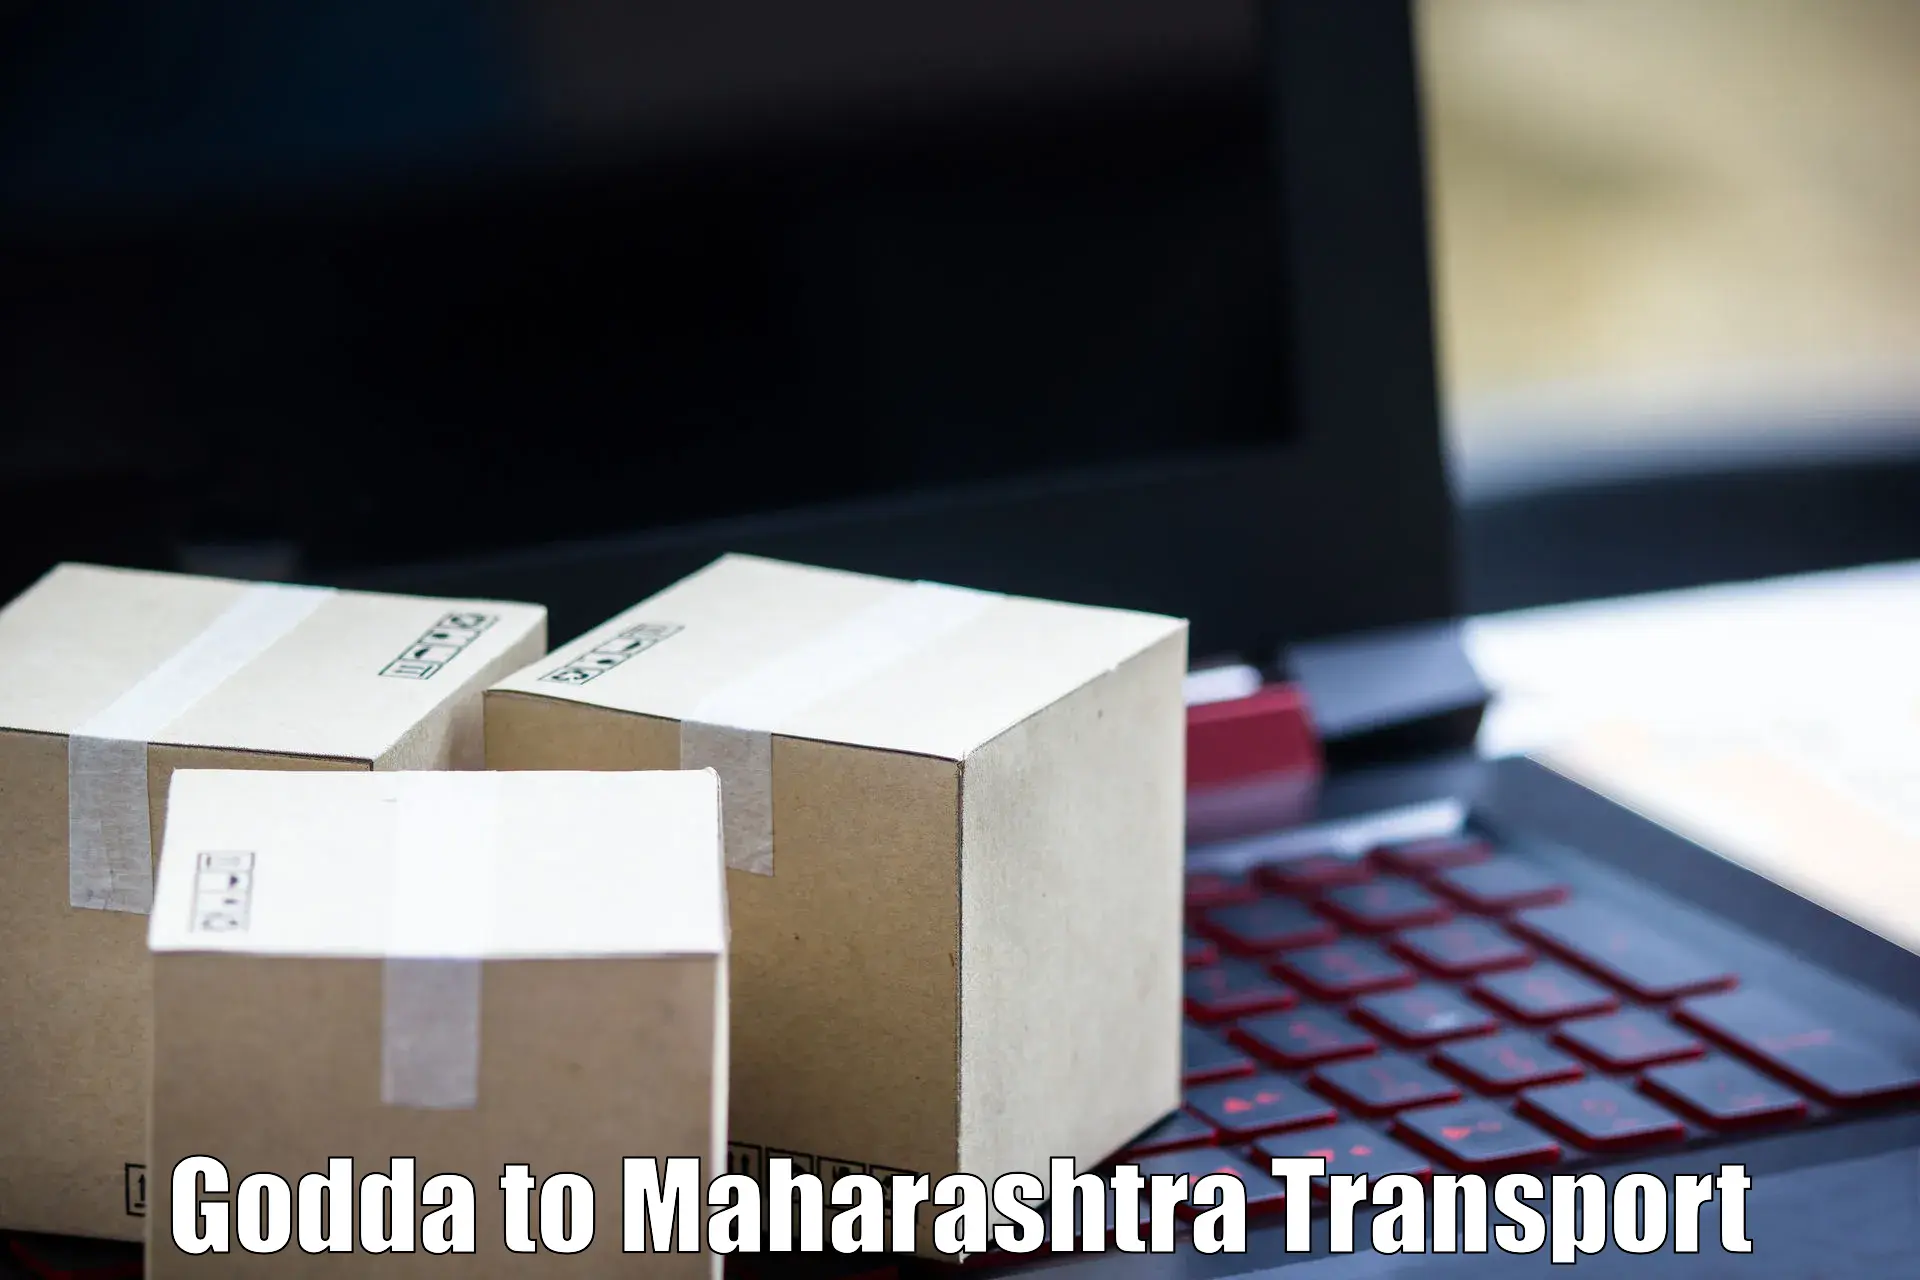 Delivery service Godda to Latur